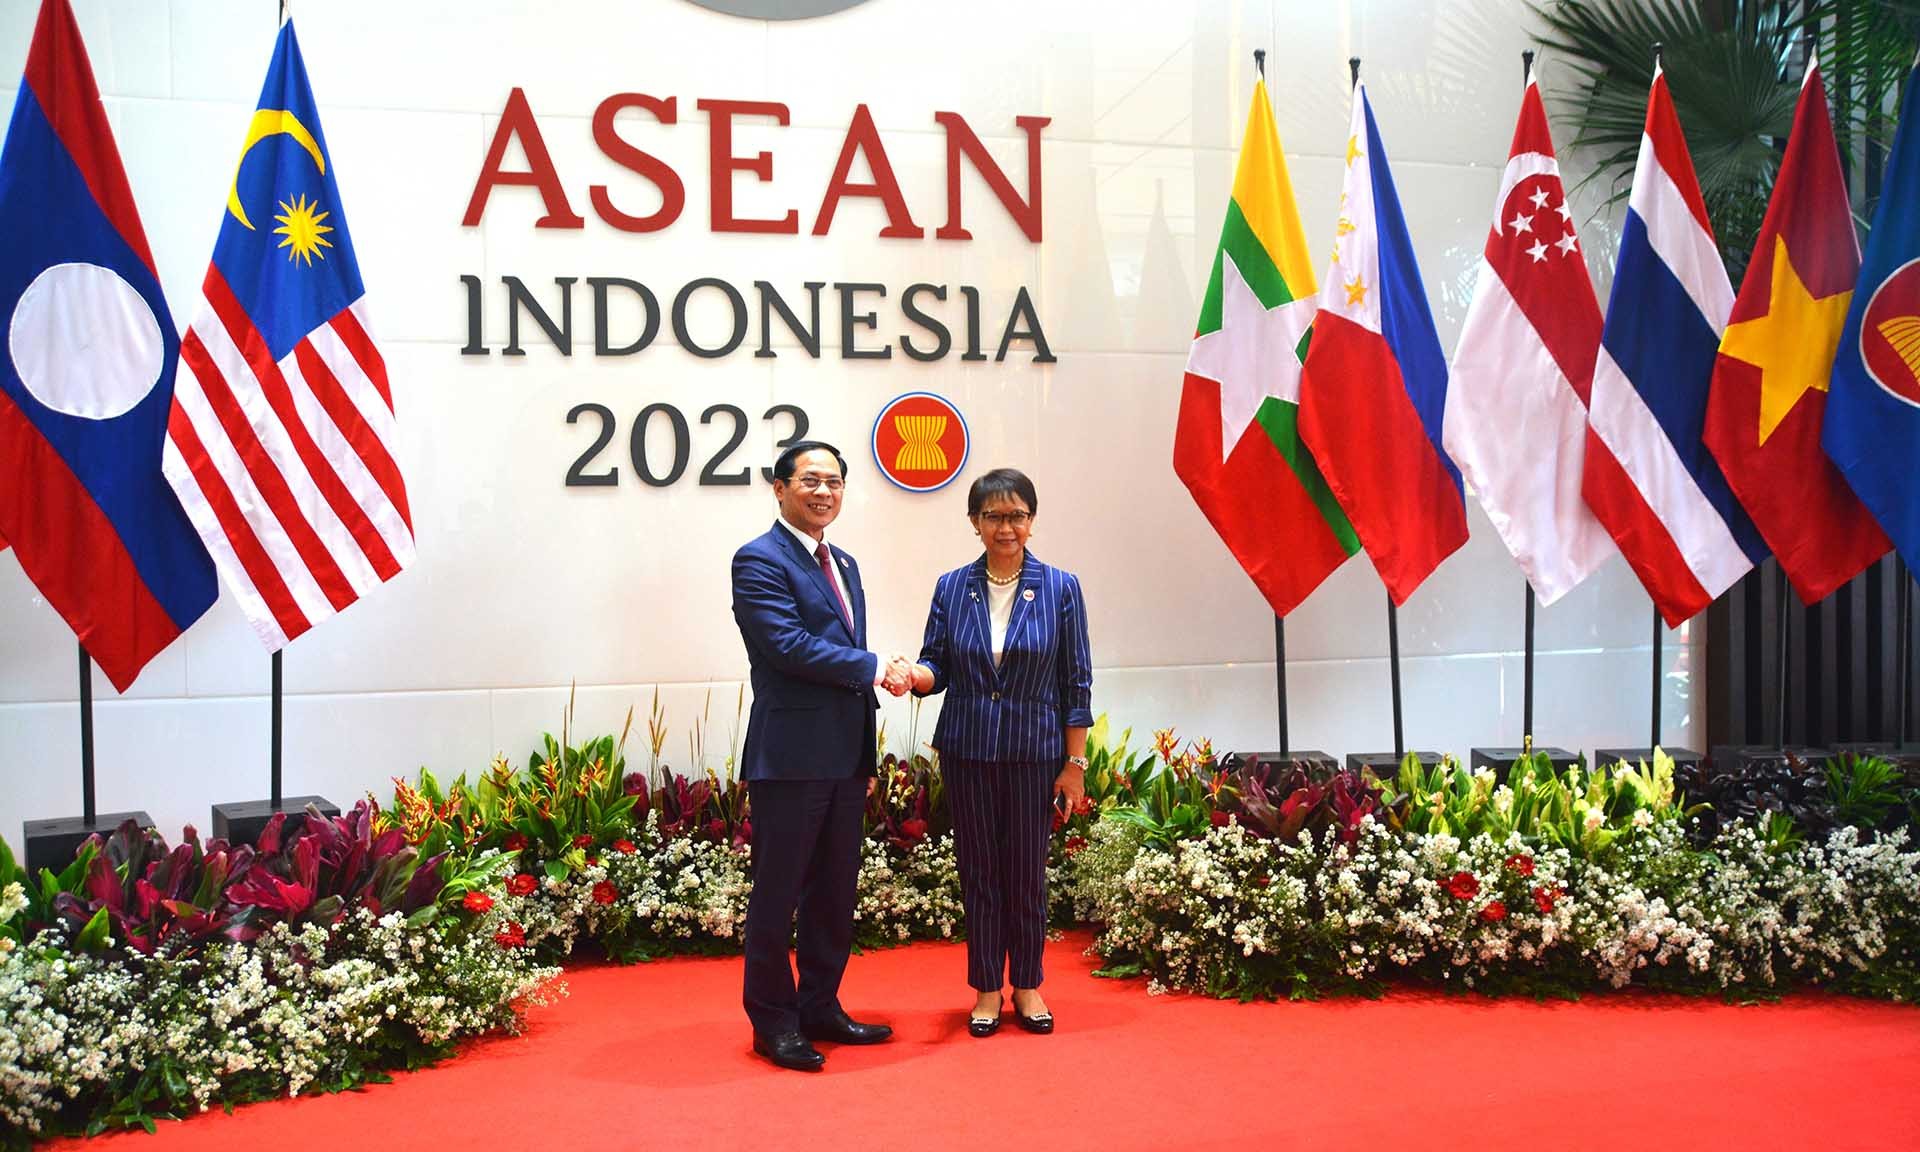 Hội nghị Hội đồng điều phối ASEAN lần thứ 32: Thống nhất các trọng tâm, ưu tiên hợp tác của ASEAN trong năm 2023